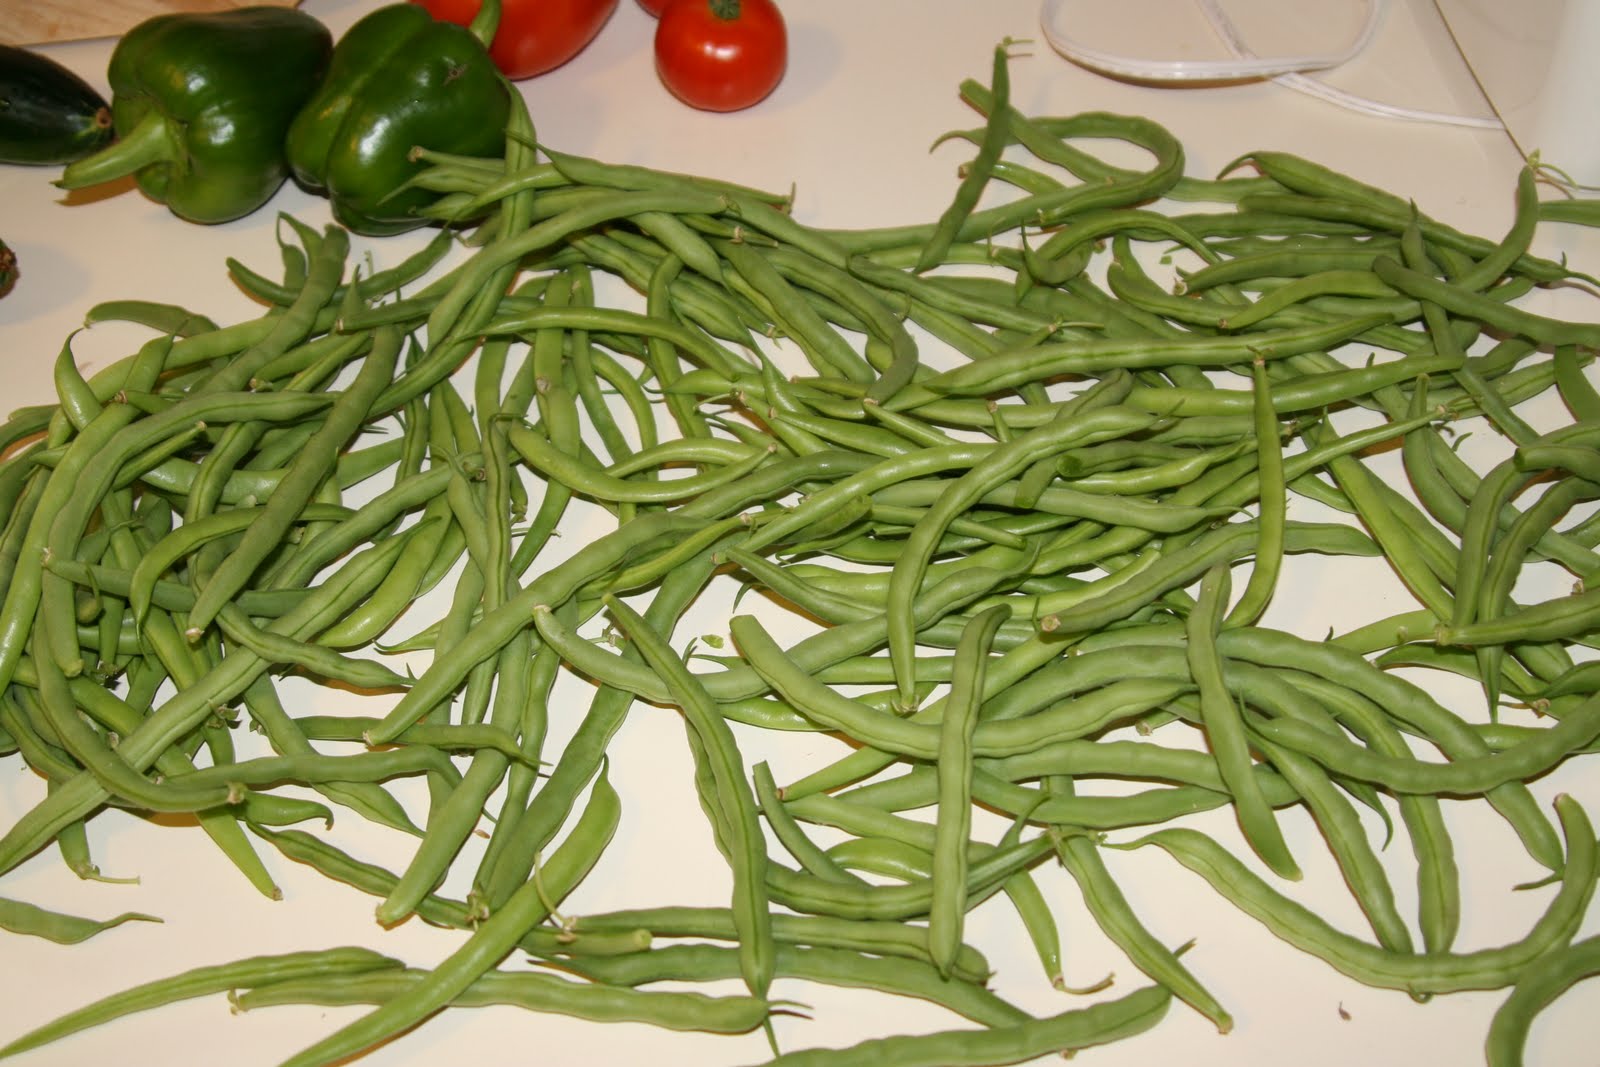 [massive+green+beans.JPG]